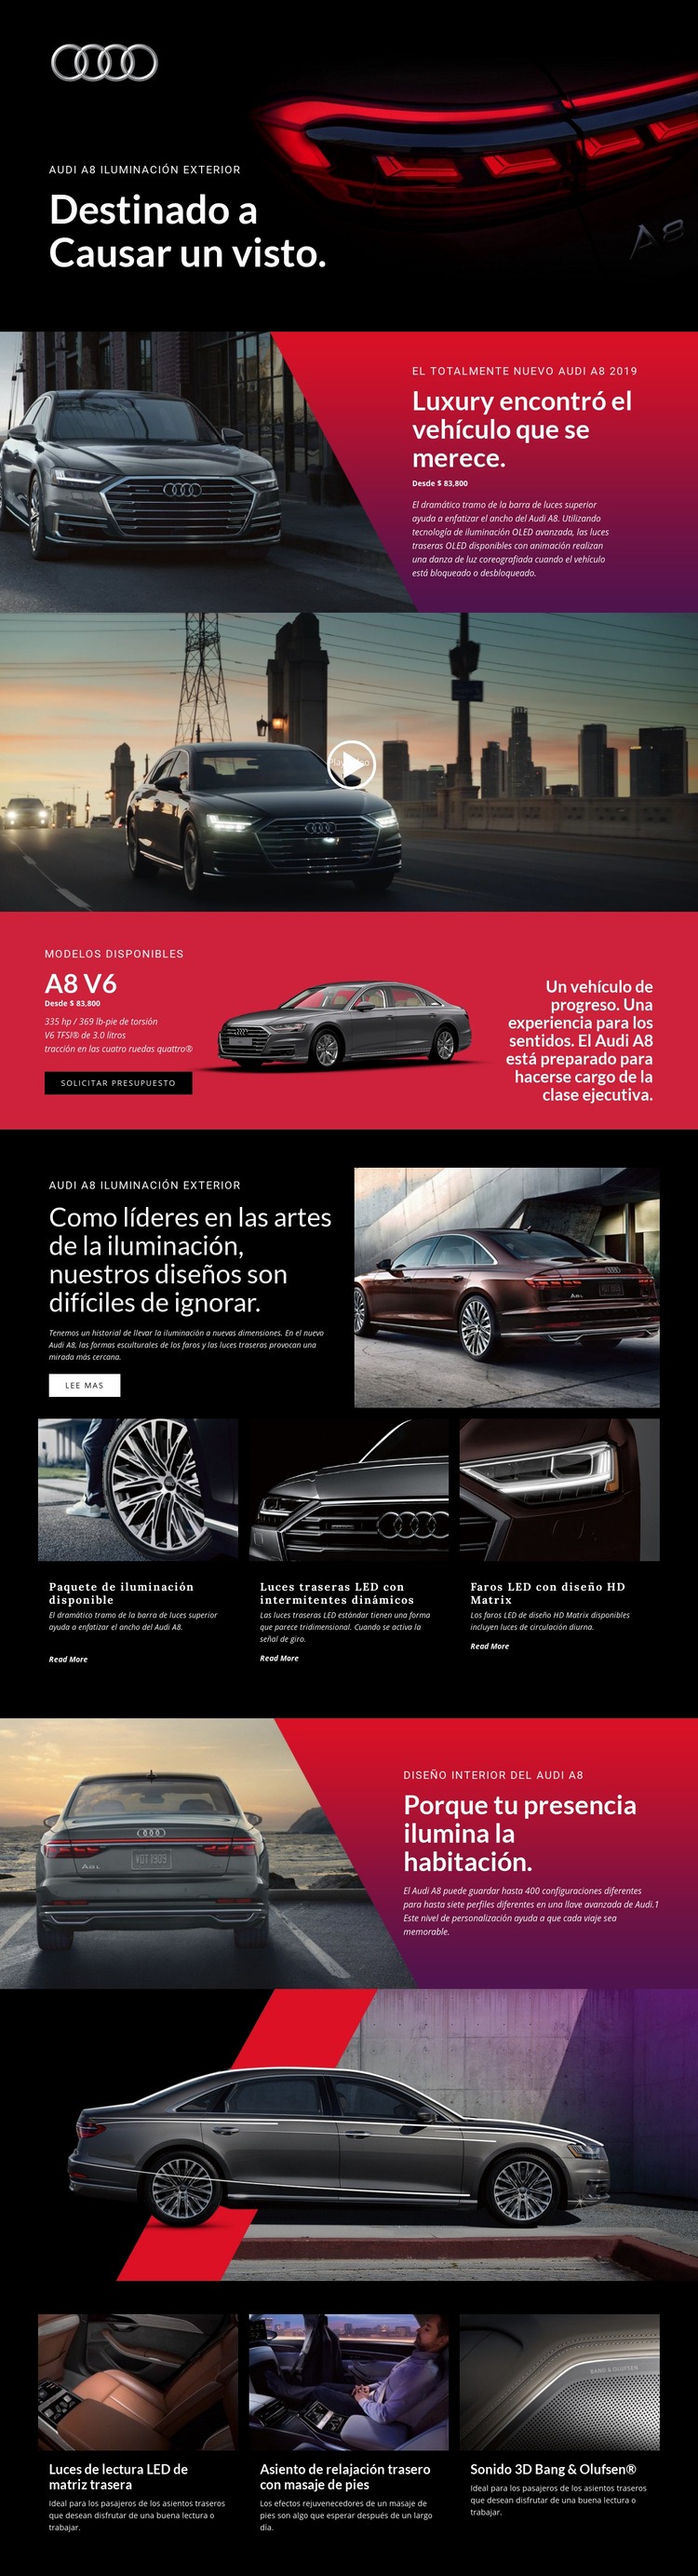 Coches de lujo Audi Diseño de páginas web